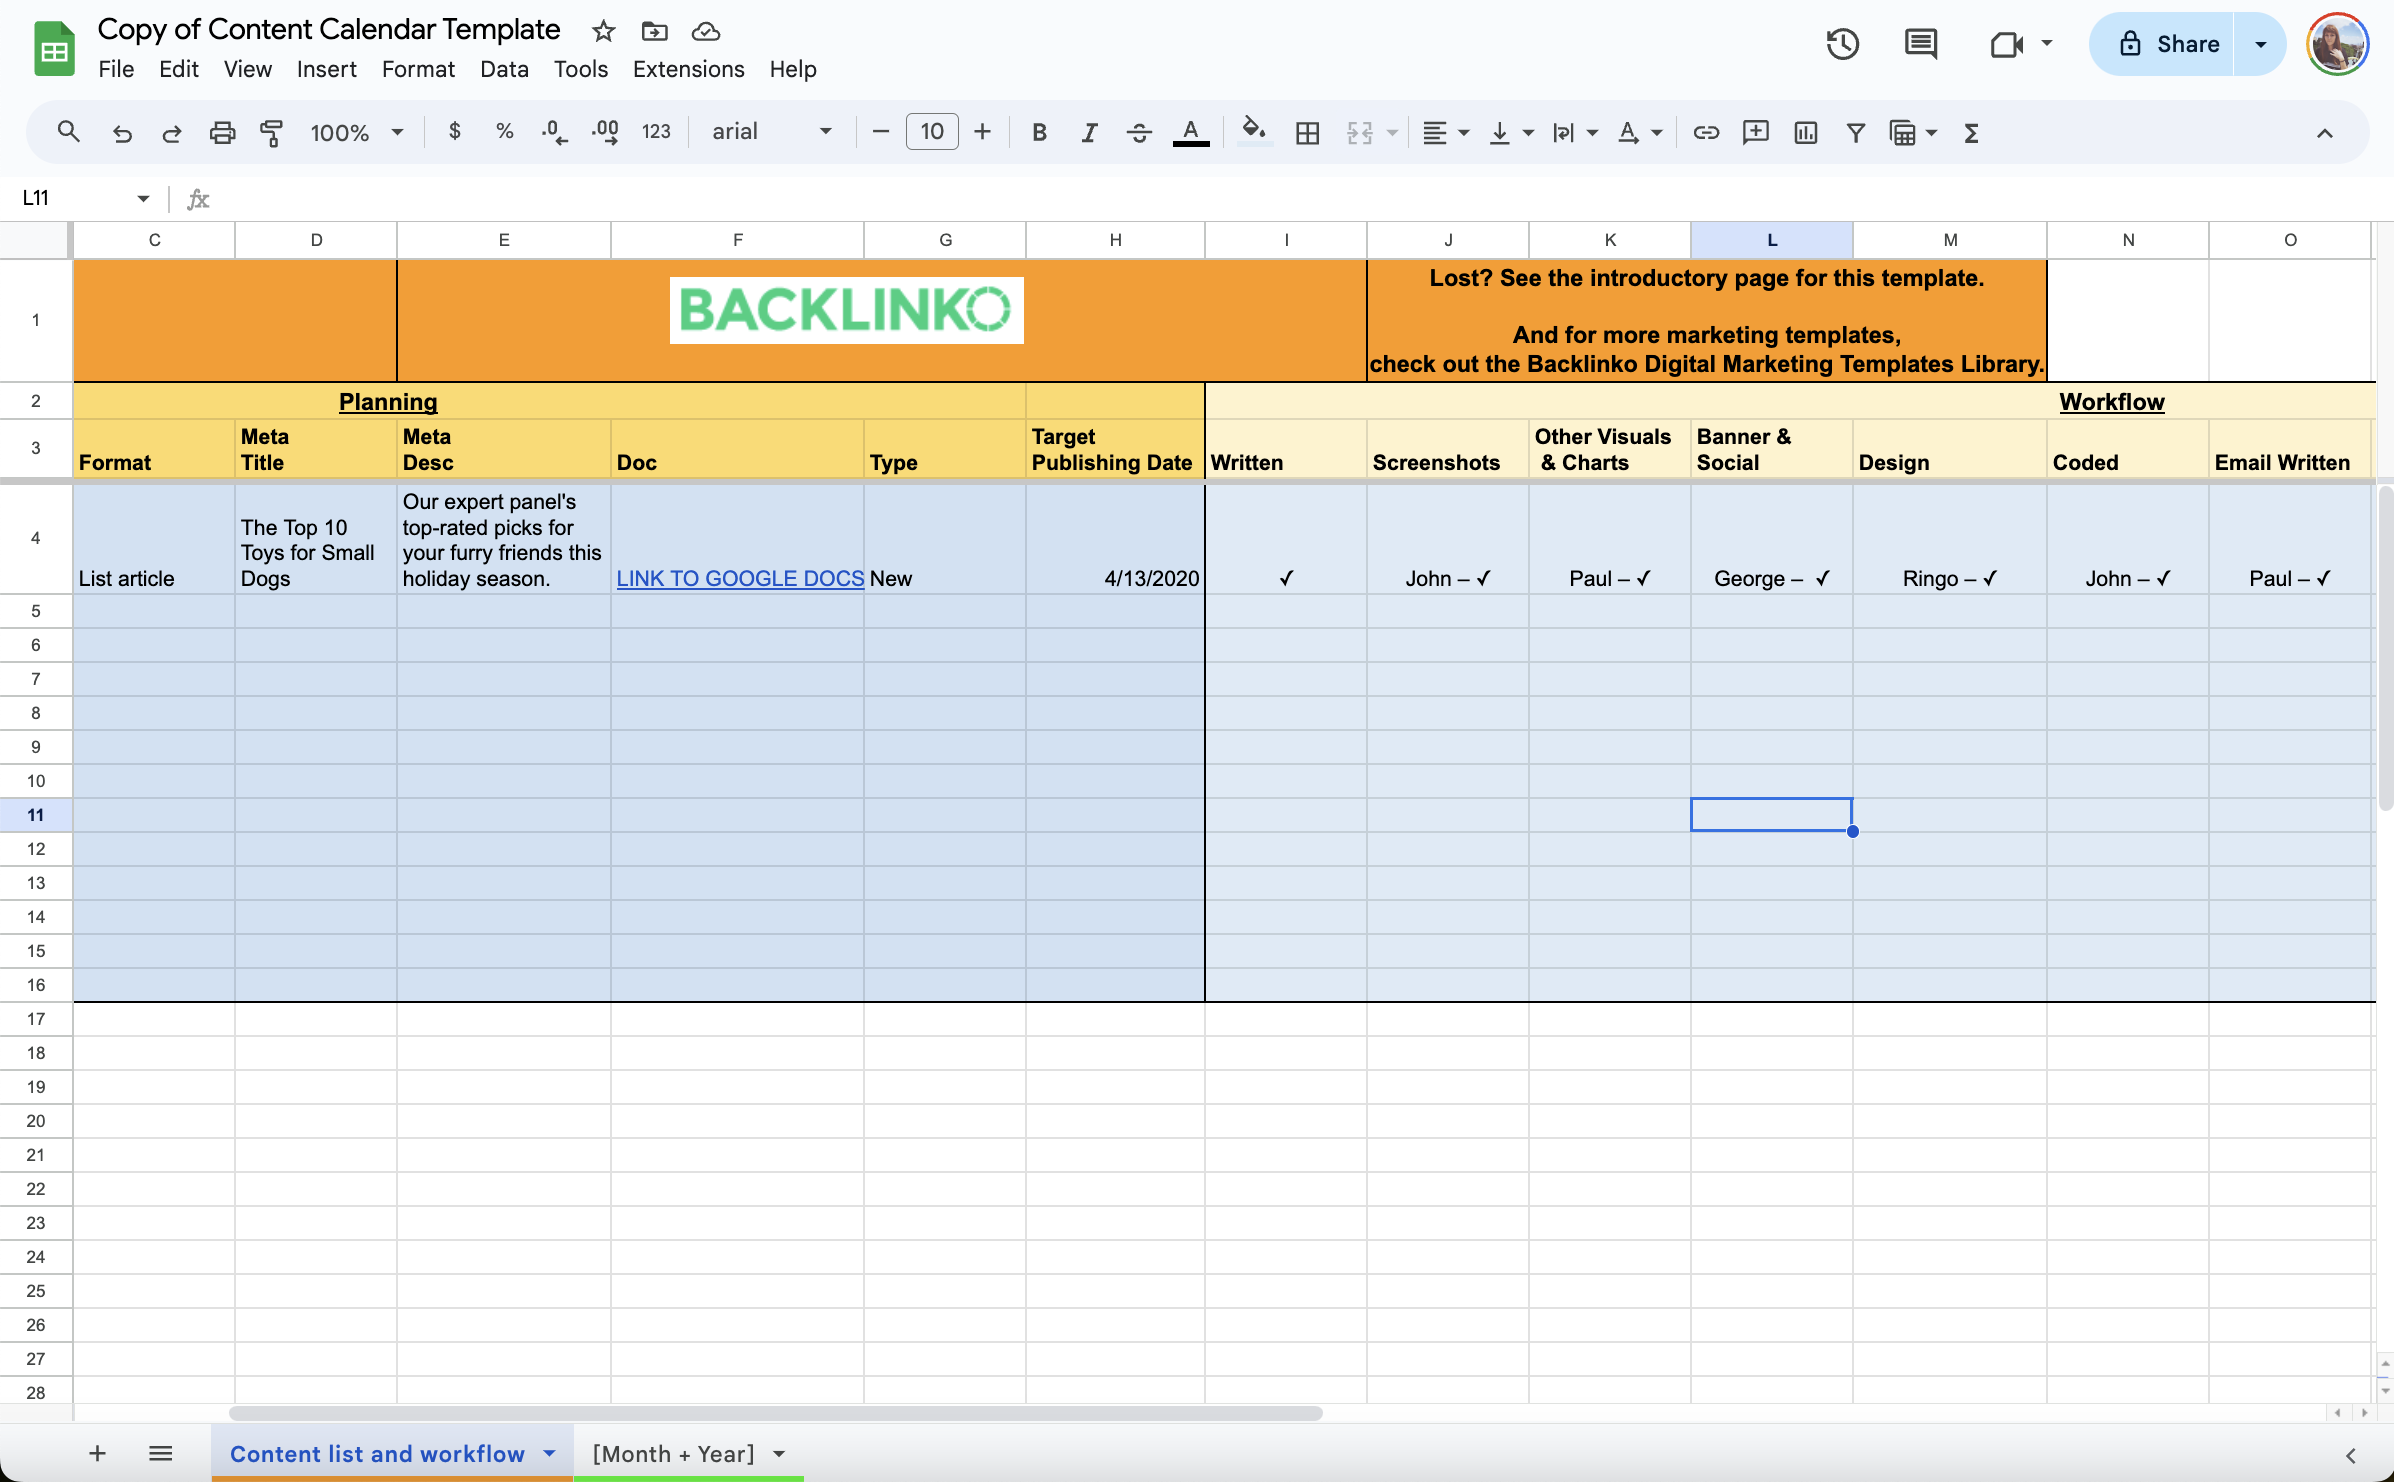 Ein Screenshot der Vorlage für den Inhaltskalender von Backlinko mit Spalten für Datum, Format, Titel, Hauptbotschaft, Aufgaben, Eigentümer, Banner, Design. 